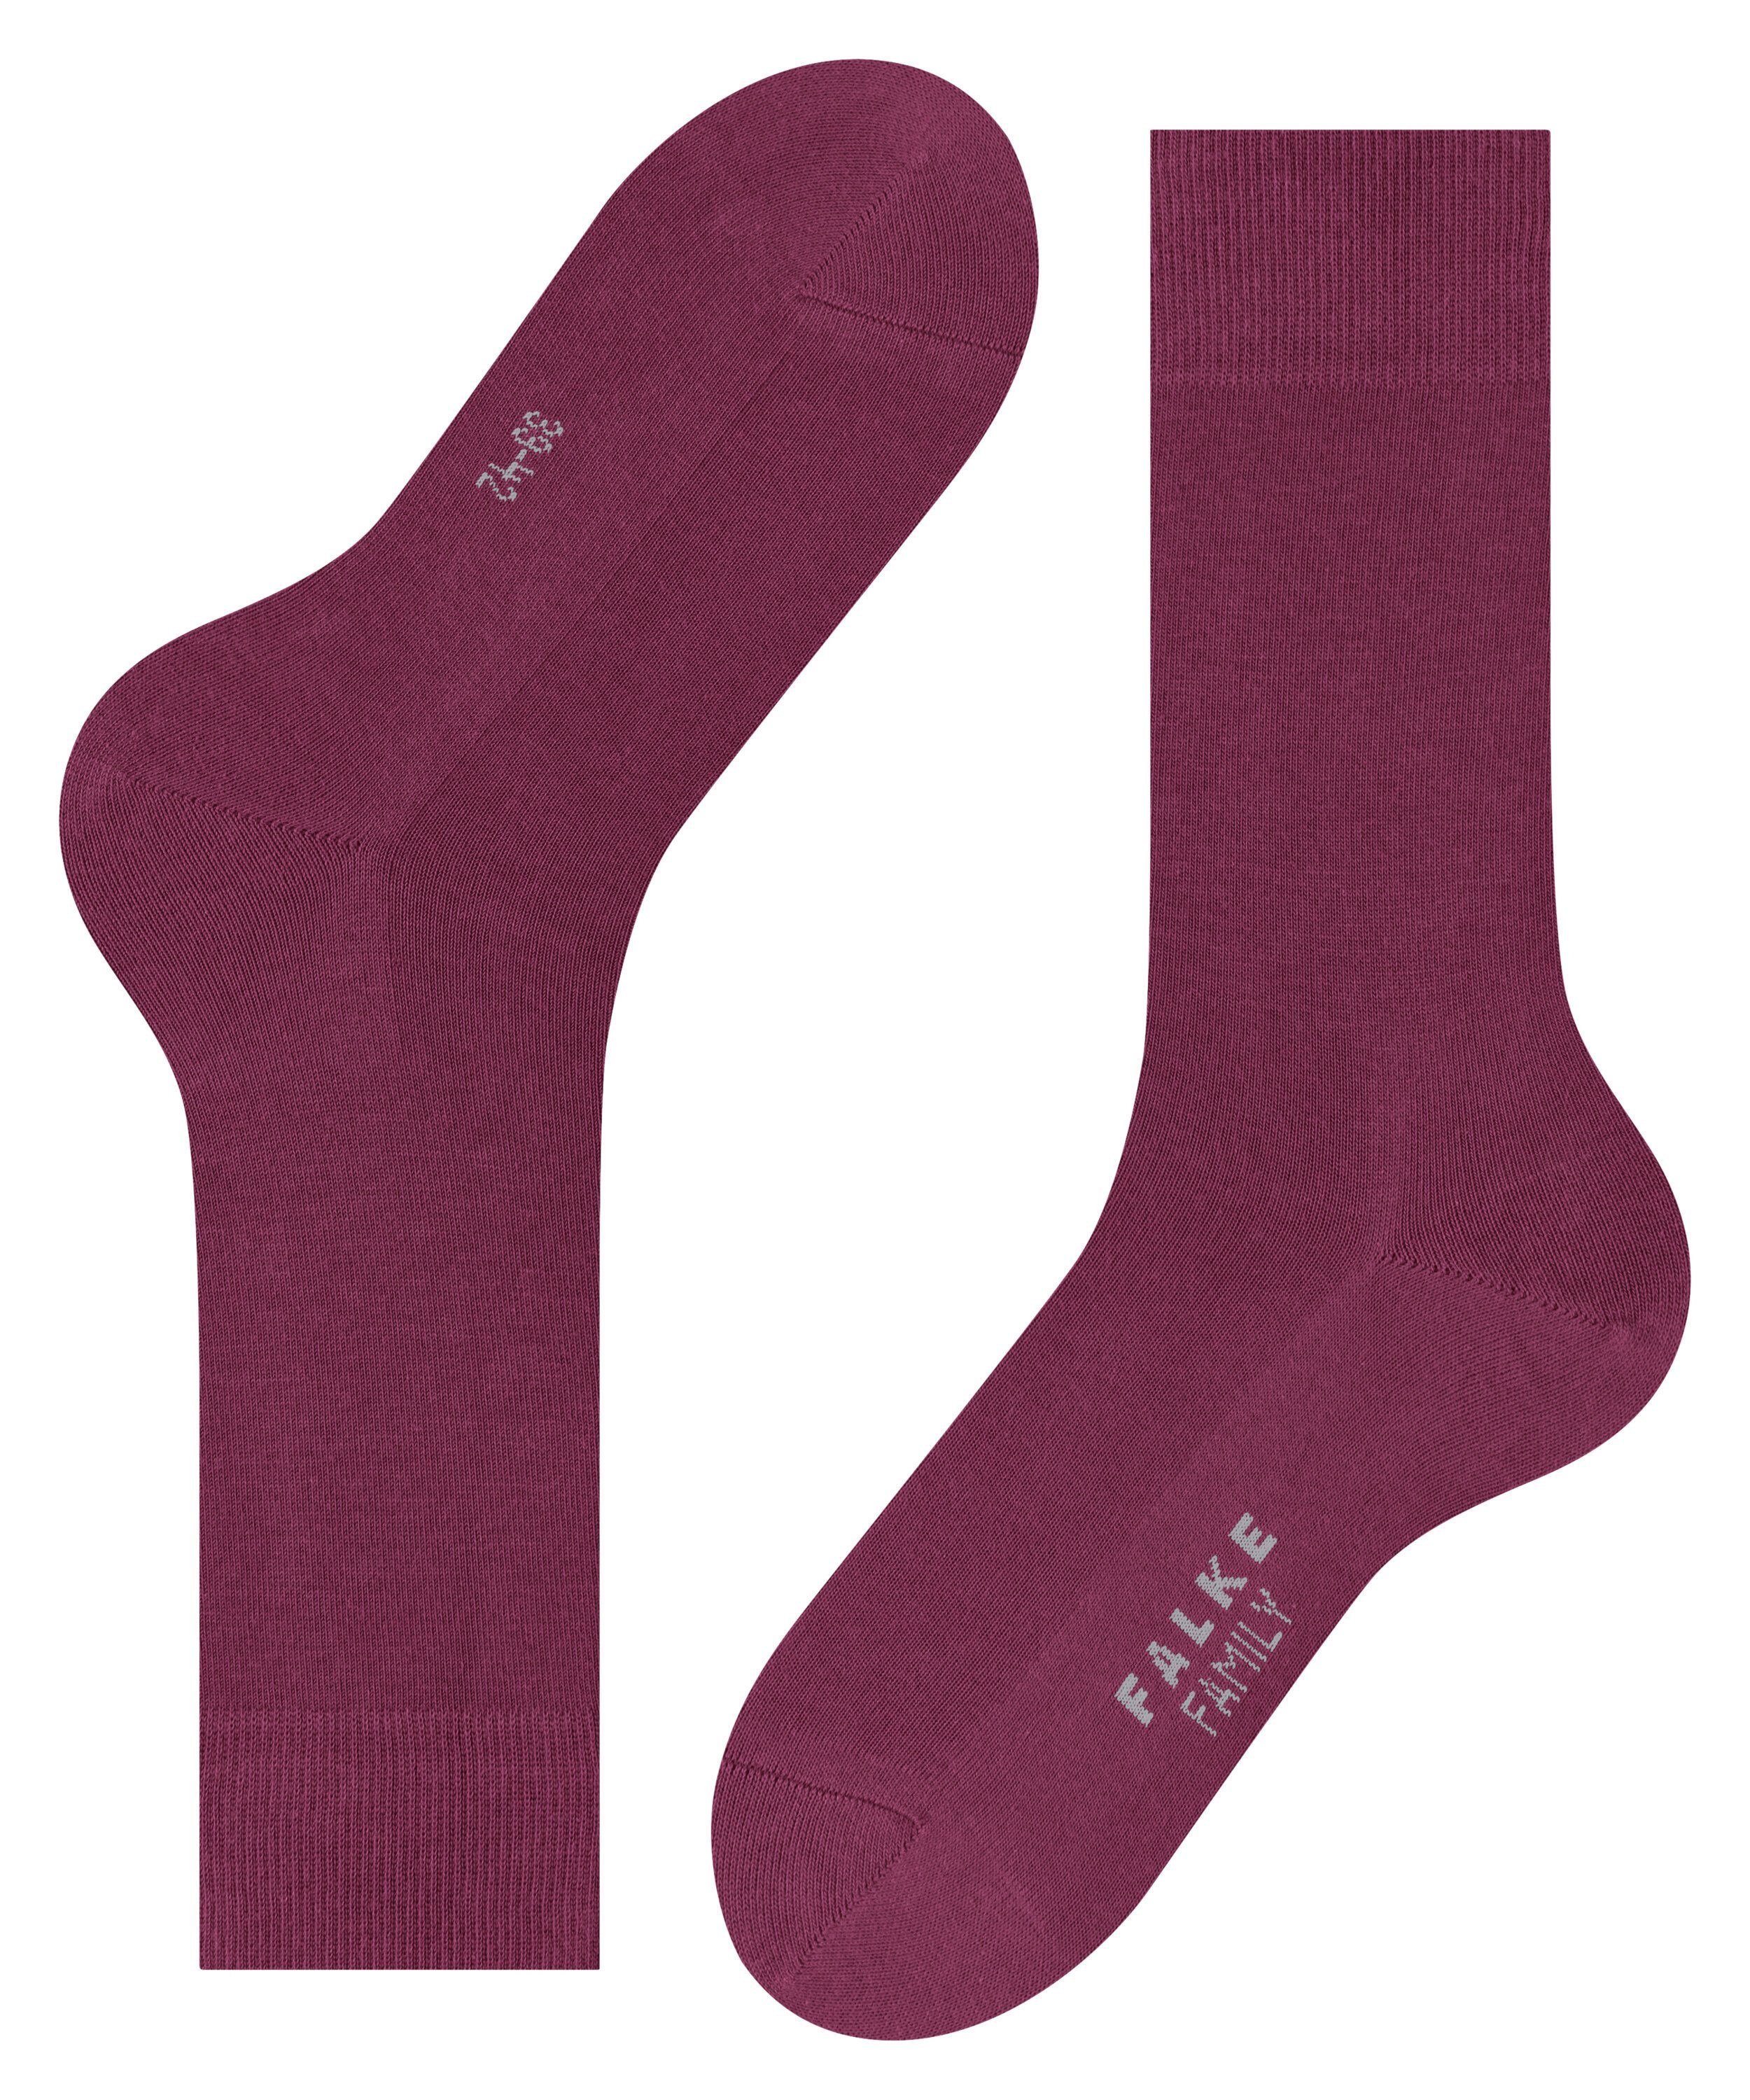 plum (8236) Socken (1-Paar) Family FALKE red